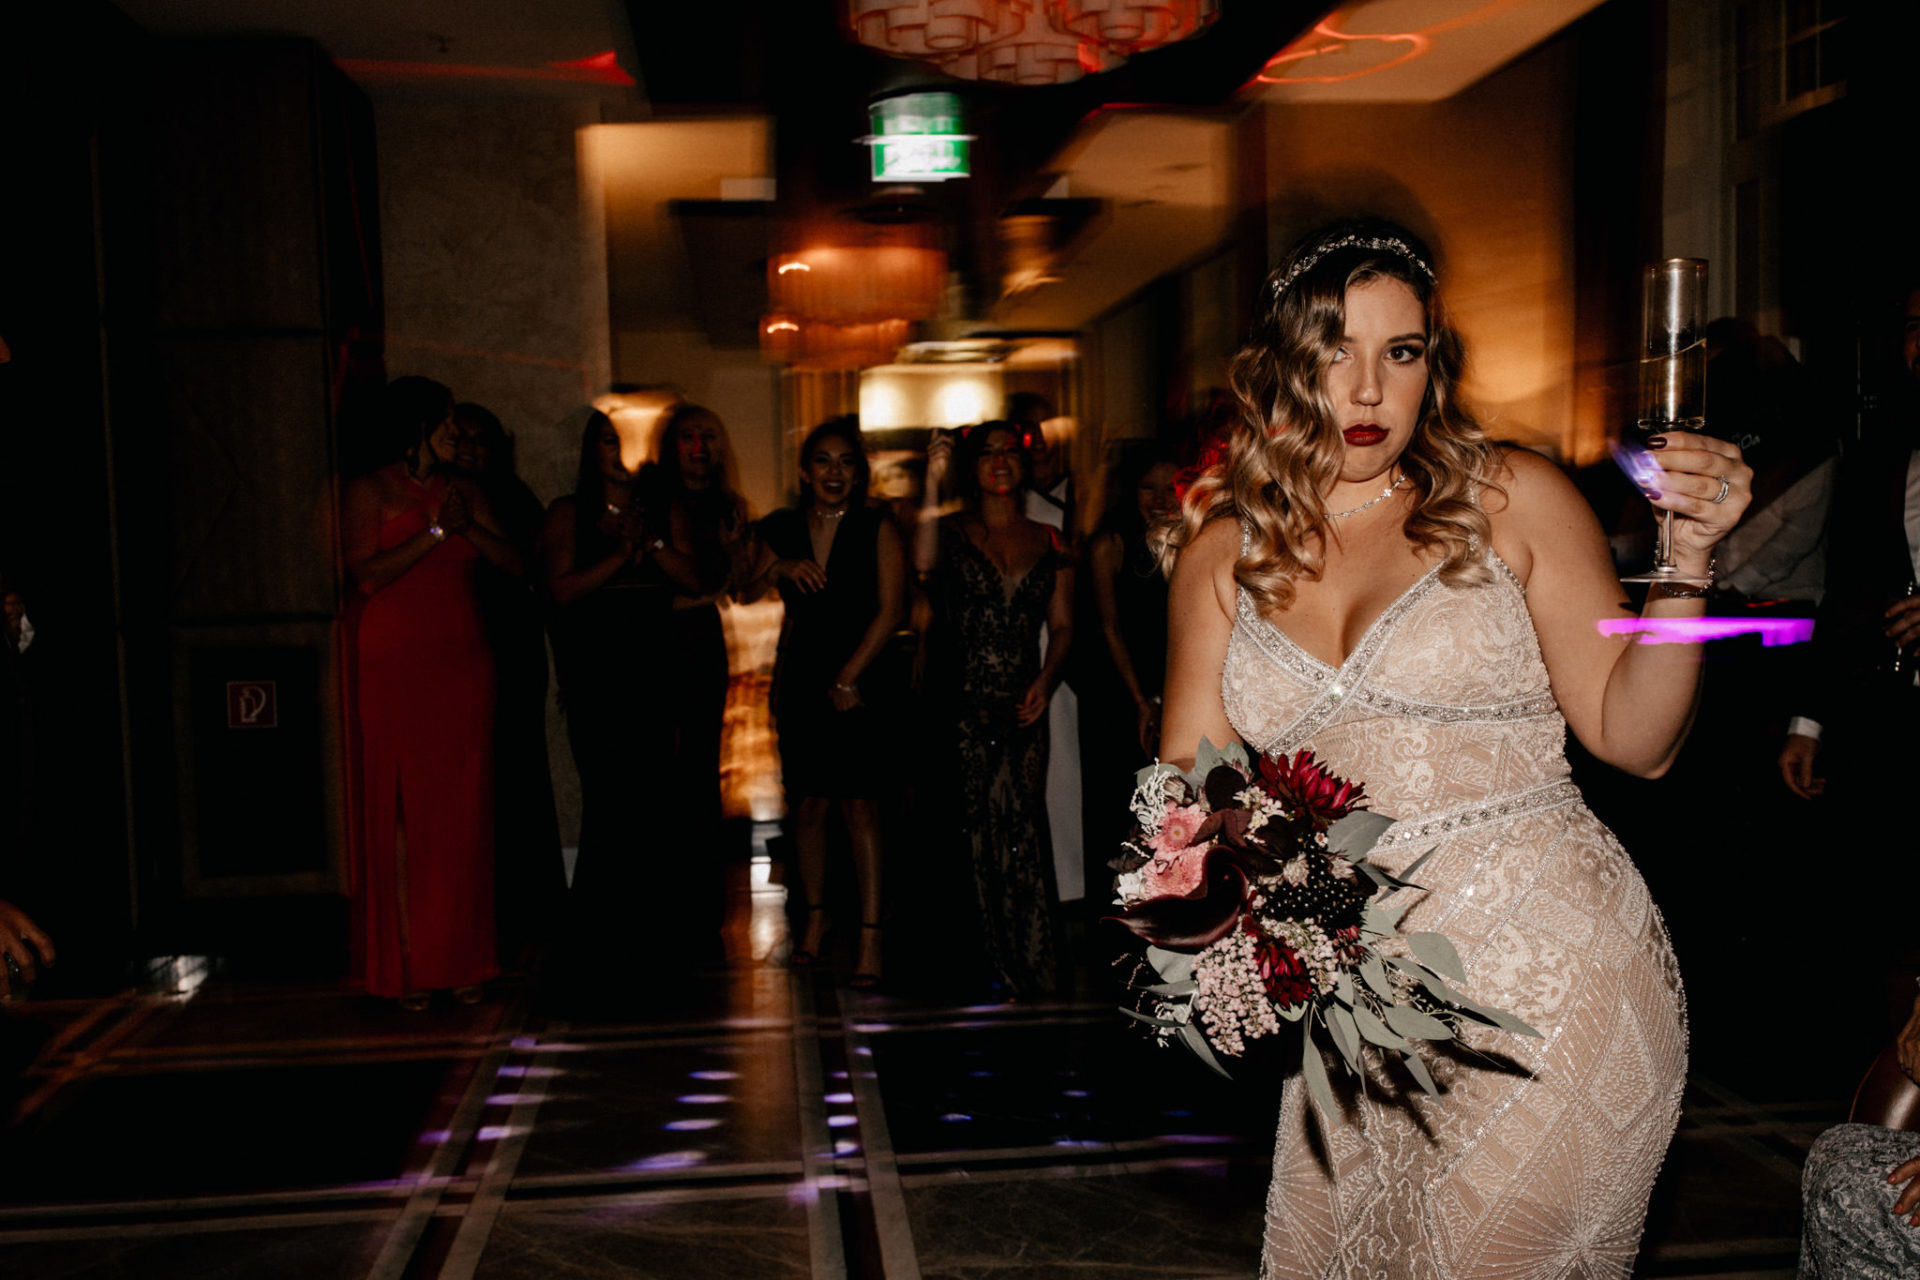 dokumentarische Hochzeitsfotografie-hochzeitsfotograf hotel am steinplatt berlin-ungestellte Portraits-glamuroese Hochzeit-dresscode-elegante braut-kubanische Hochzeit